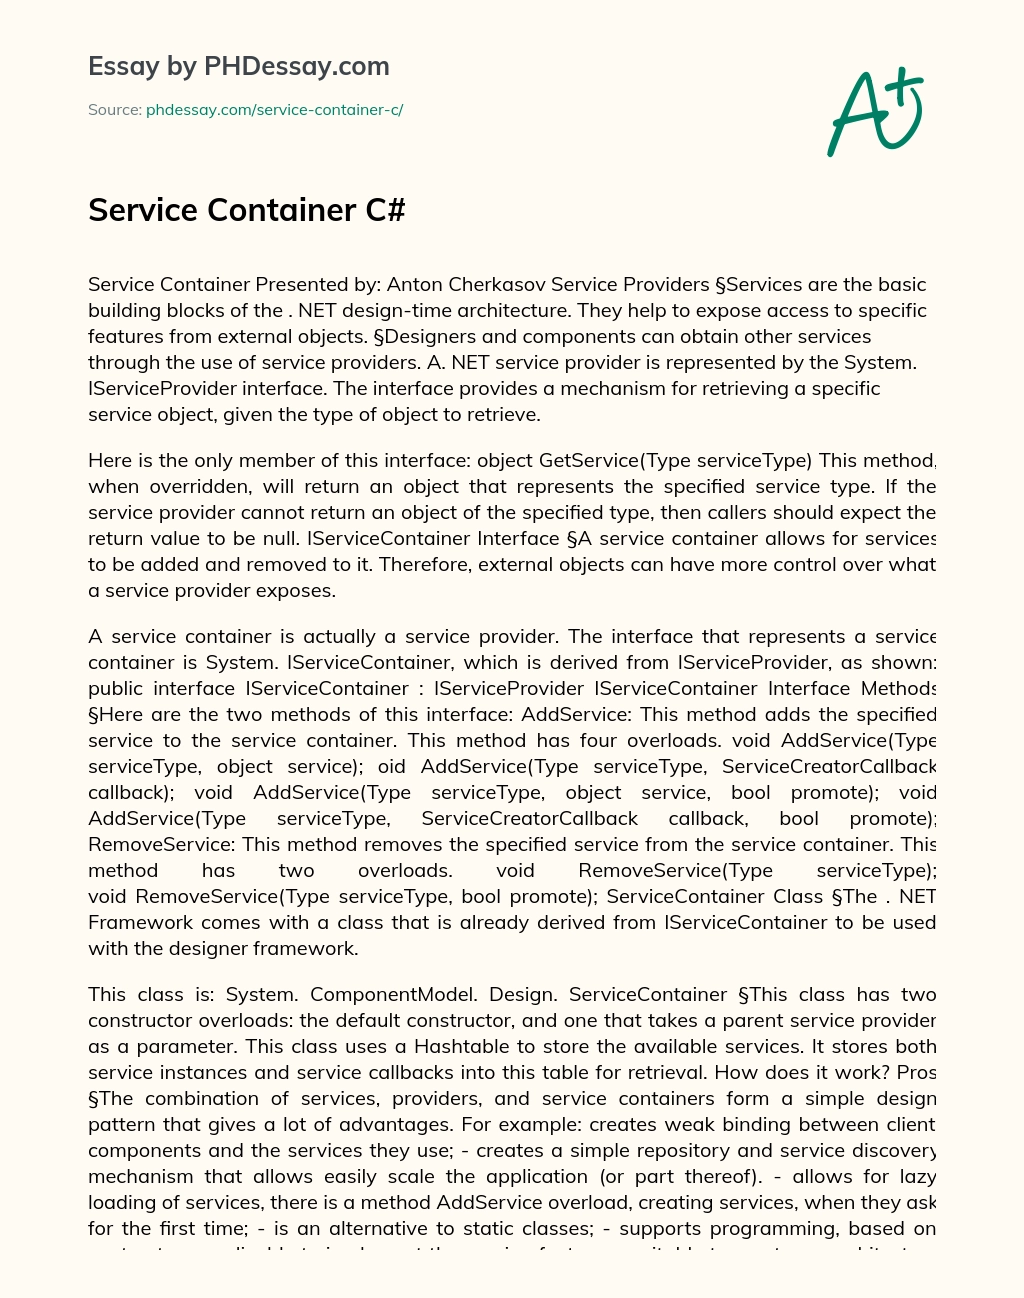 Service Container C# essay